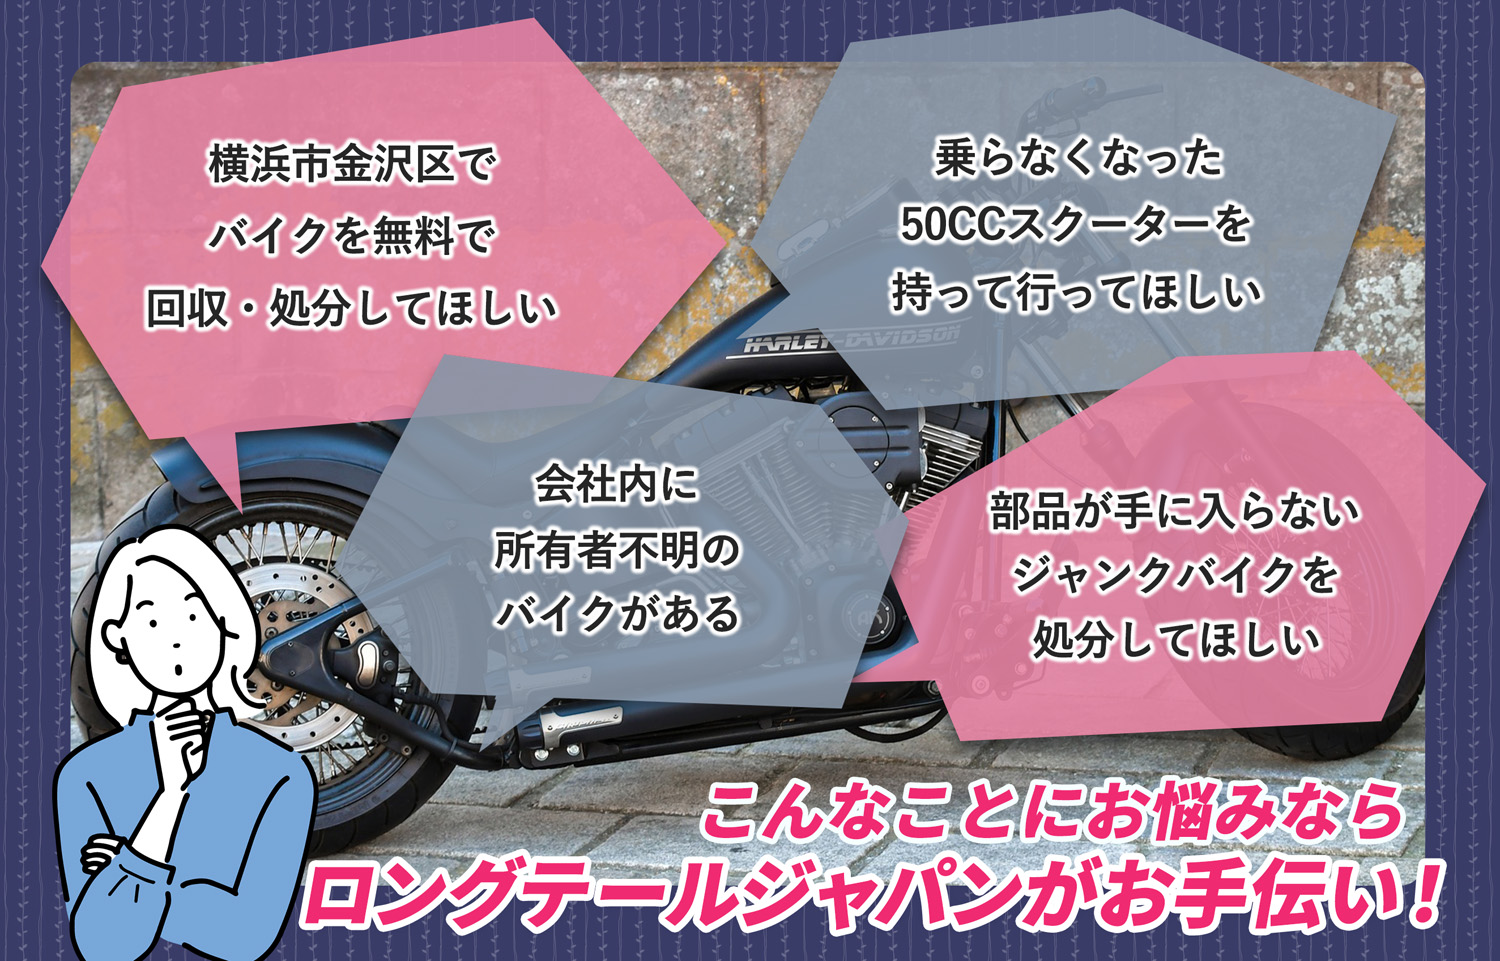 横浜市金沢区でこんなバイクの処分にお困りでしたらバイク無料回収処分隊がお手伝いいたします。